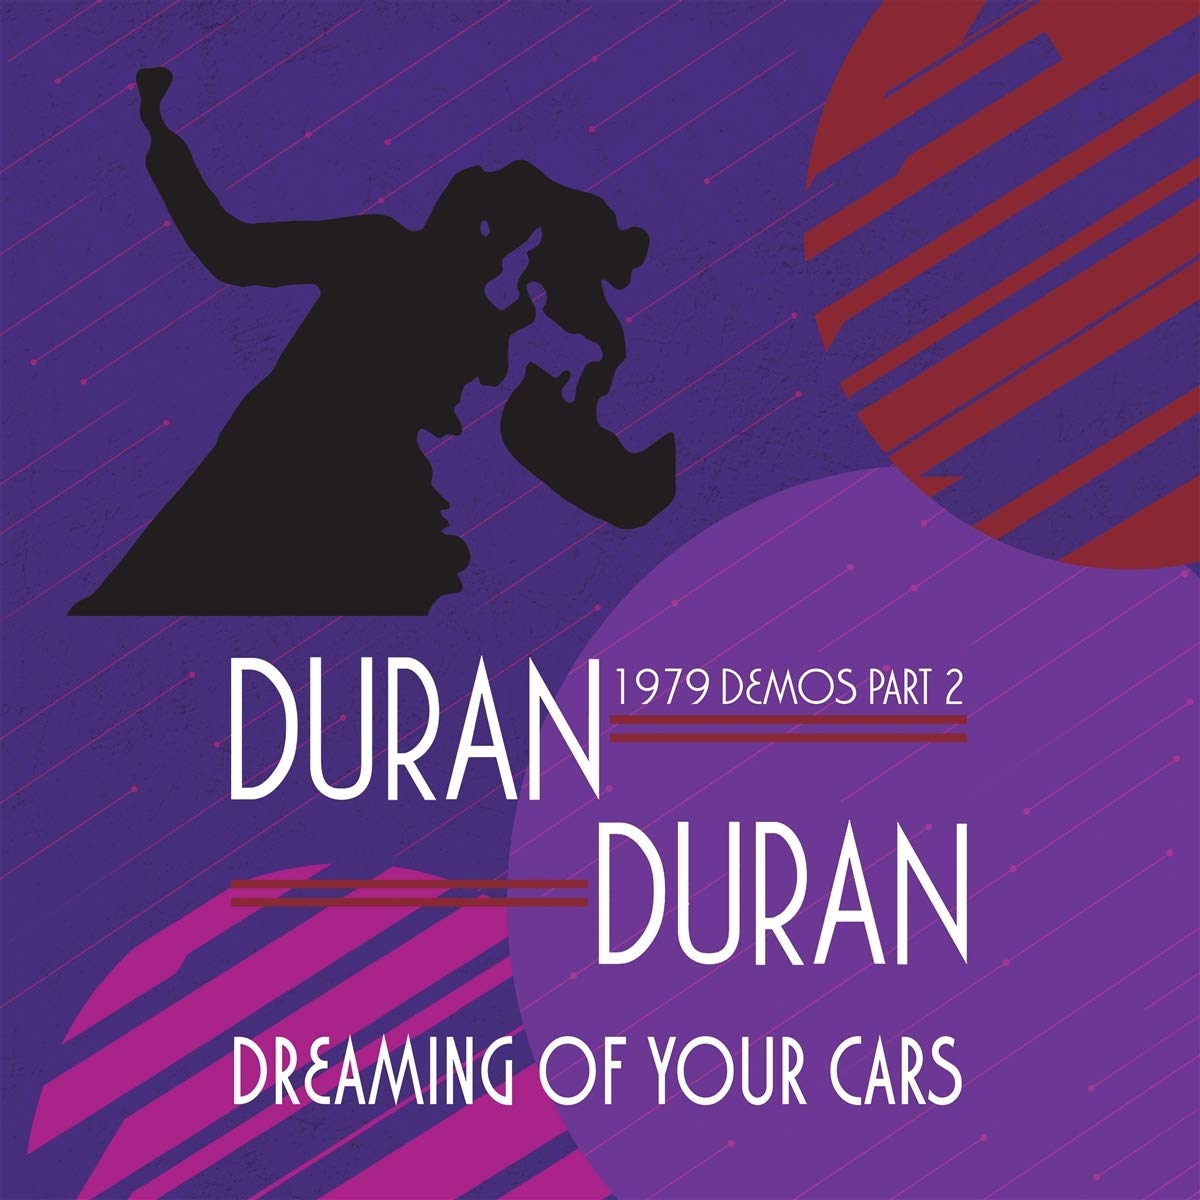 Duran Duran demos 2